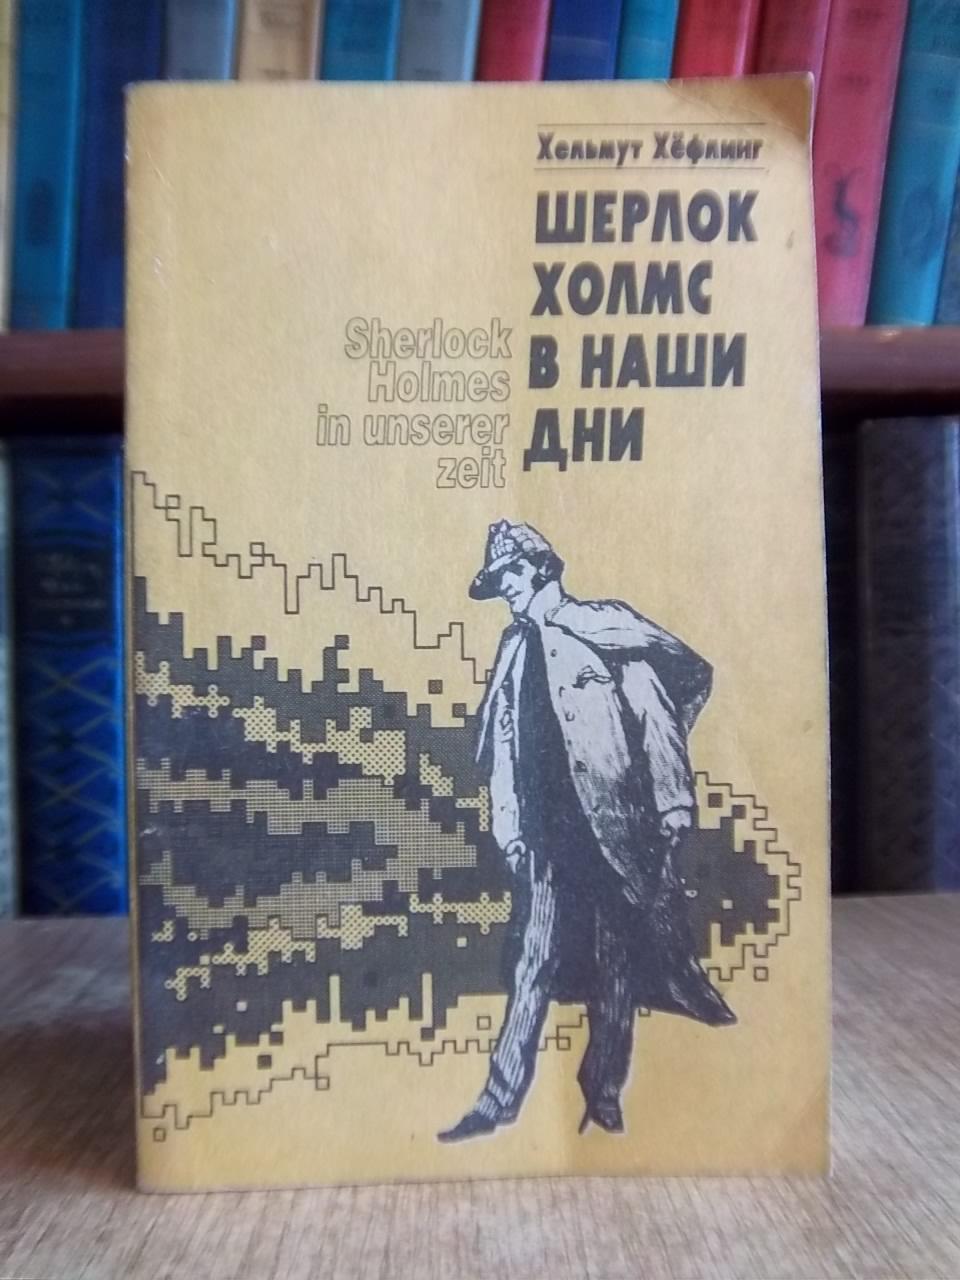 Хельмут Хефлинг.	Шерлок Холмс в наши дни. ( SherlokHolms in unserer Zeit).